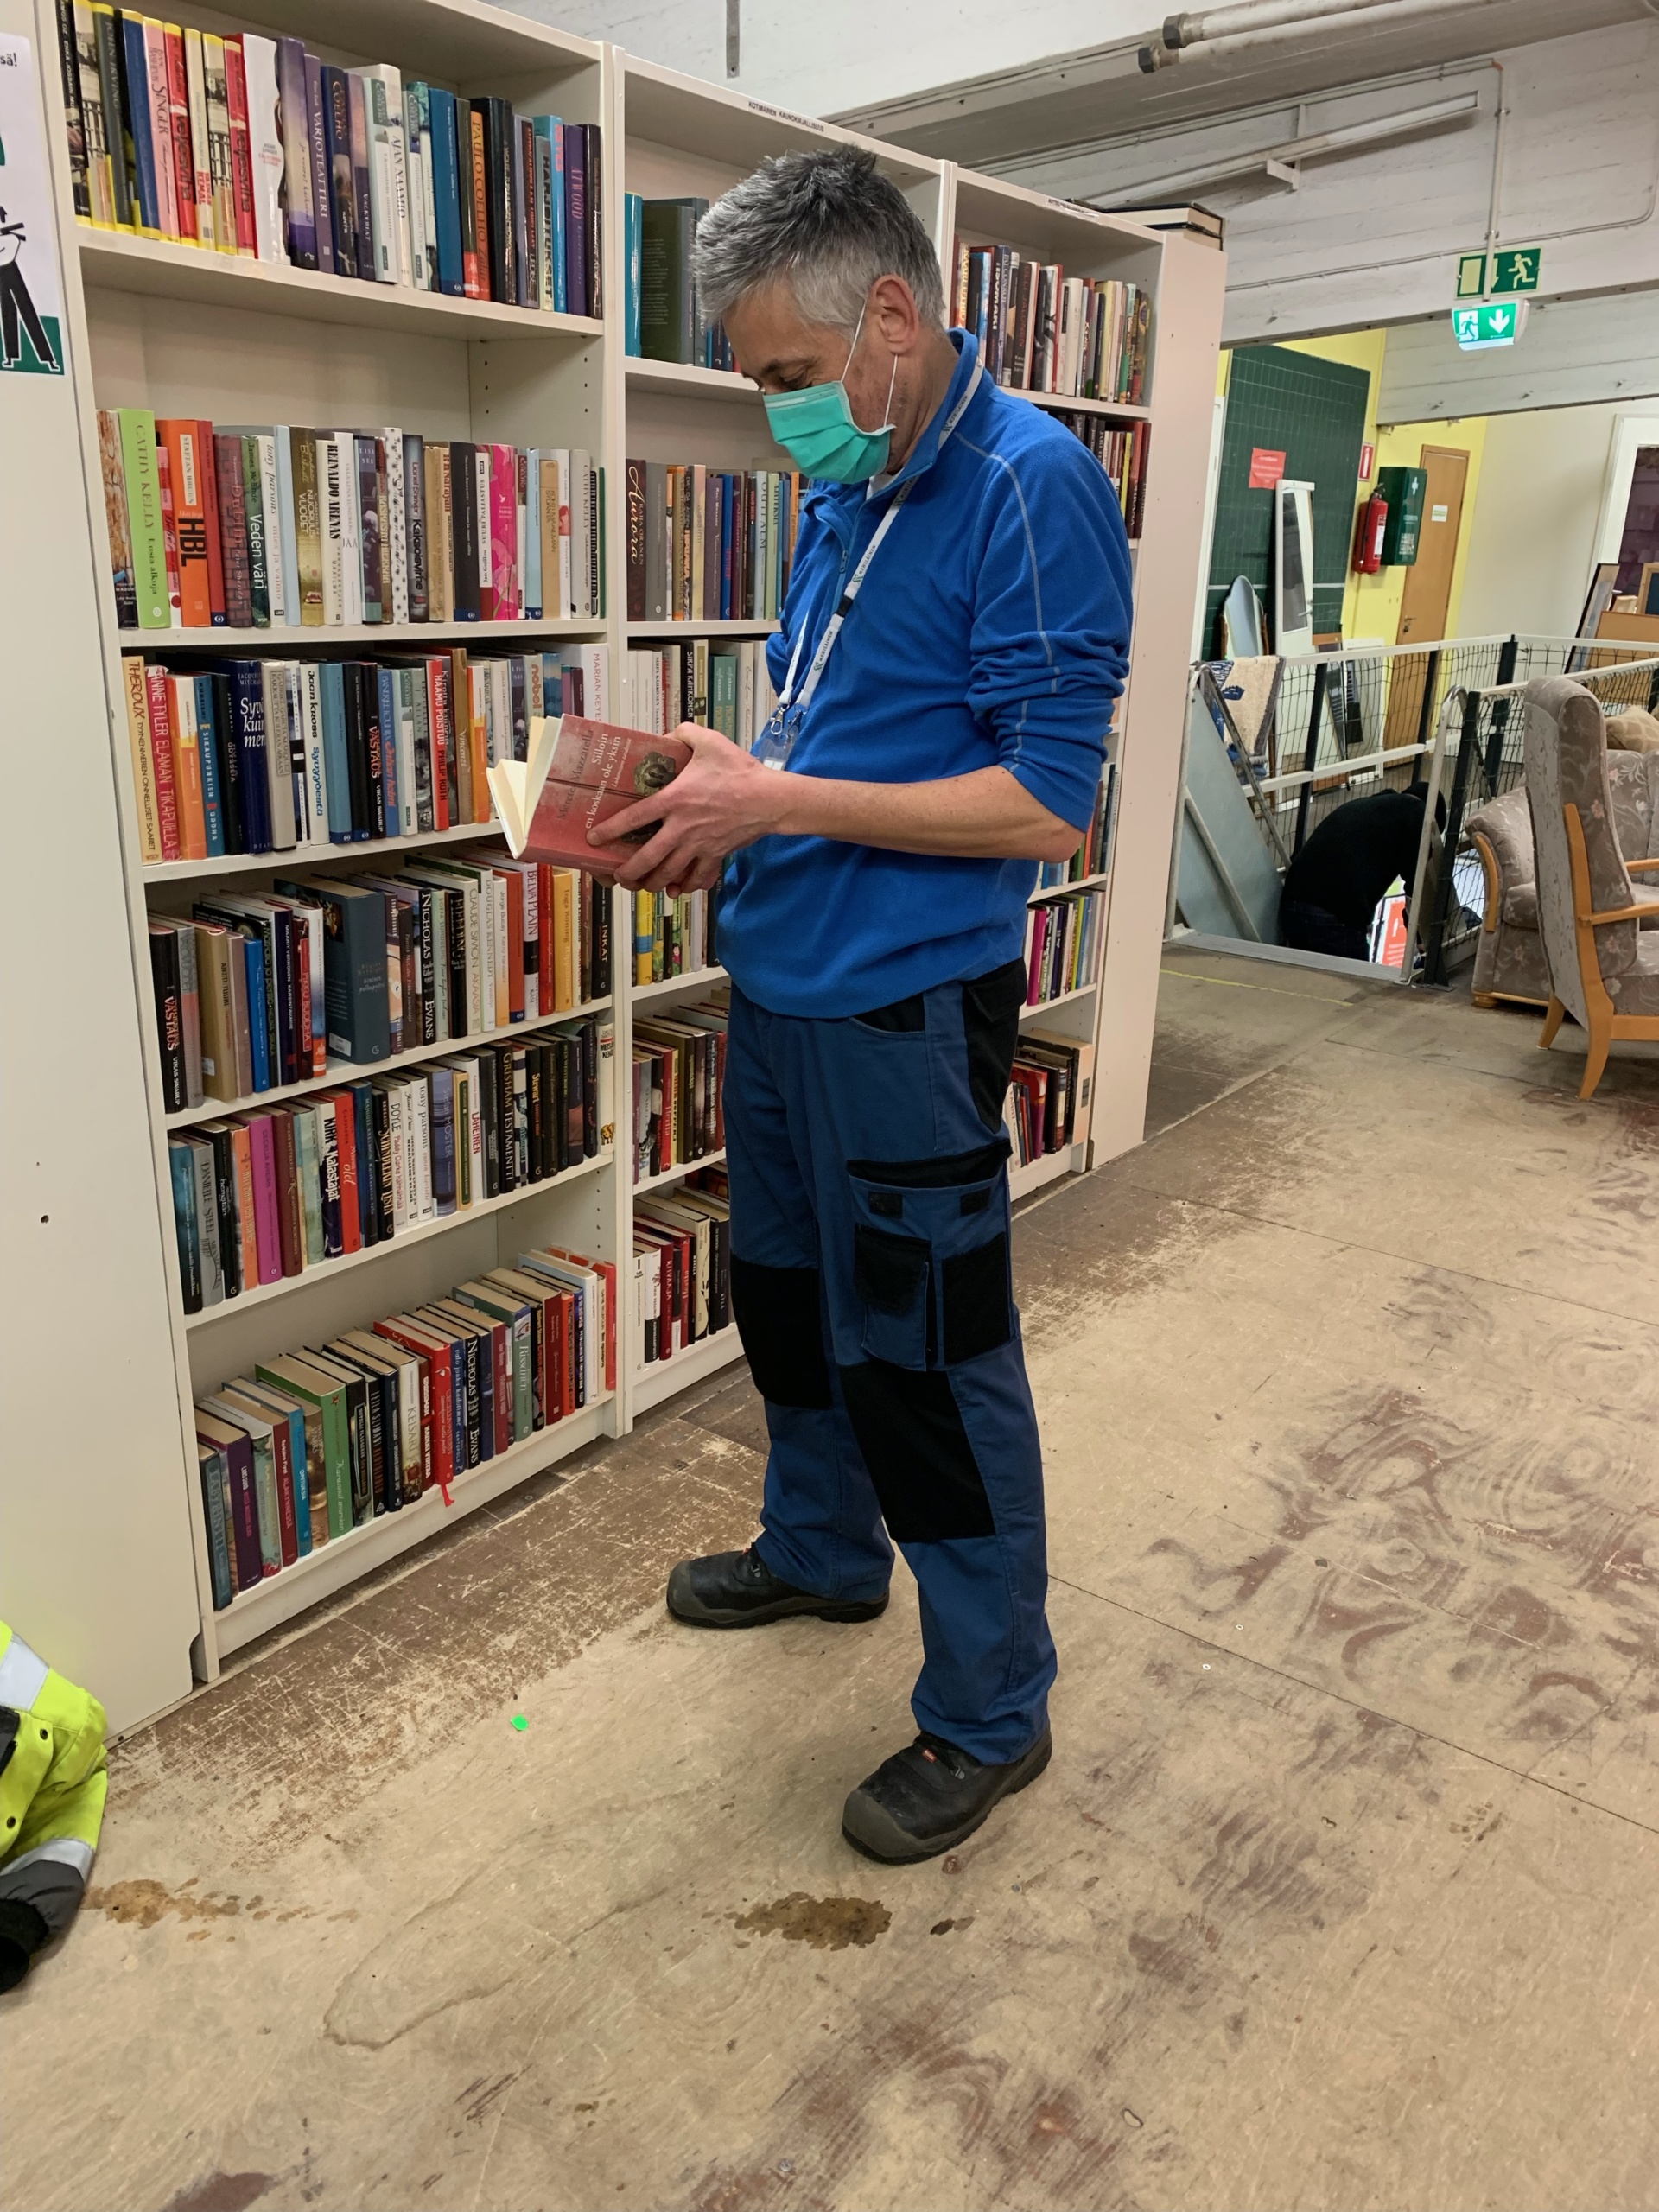 Mies tutkii maski päässä kirjaa kirjahyllyn edessä.